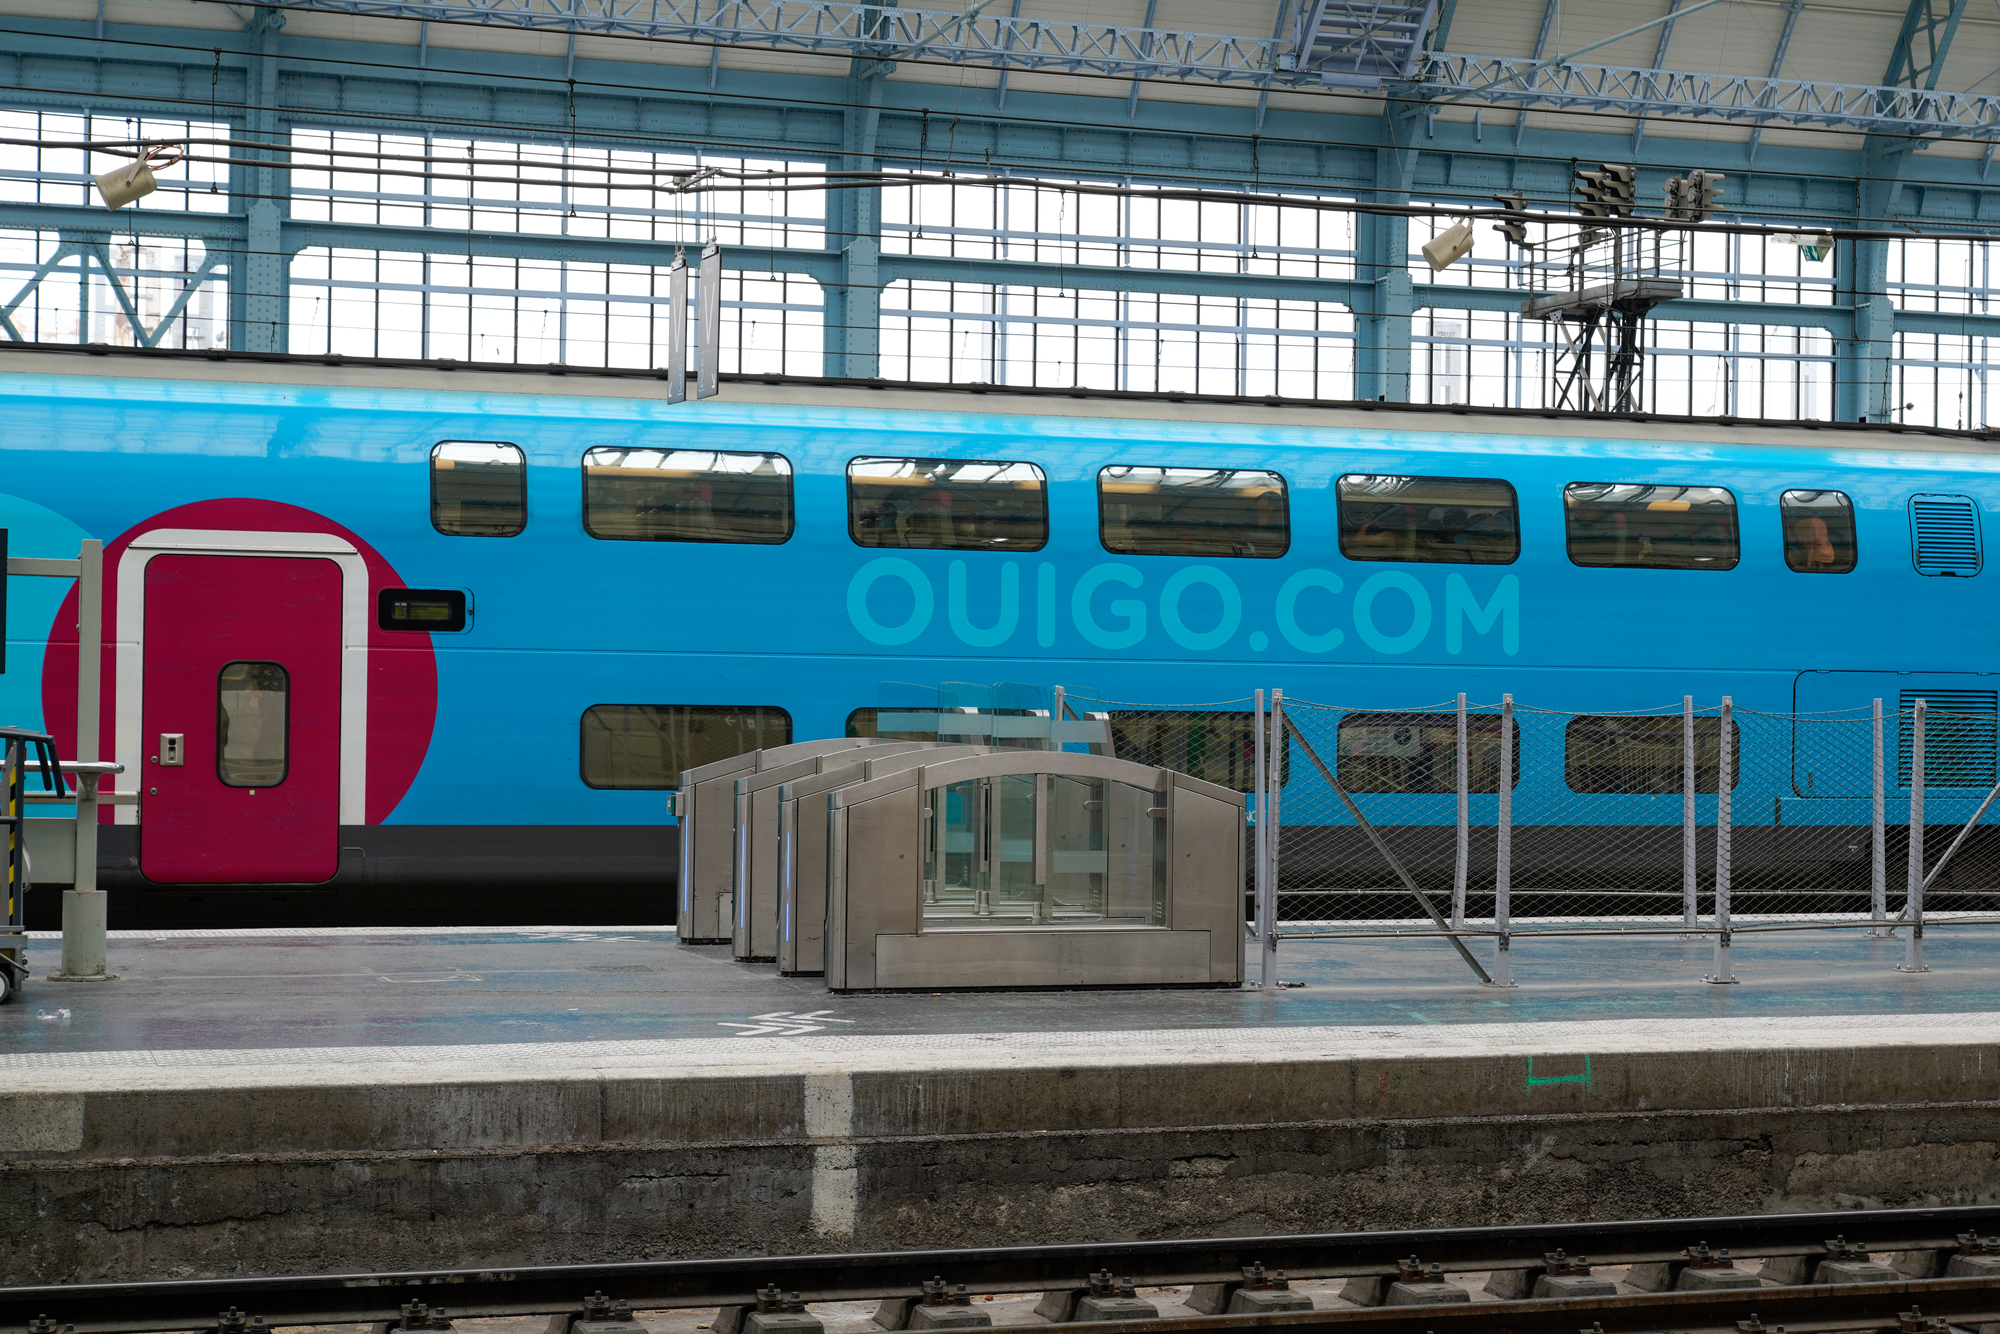 Типы и стоимость билетов на скоростные поезда компании Ouigo